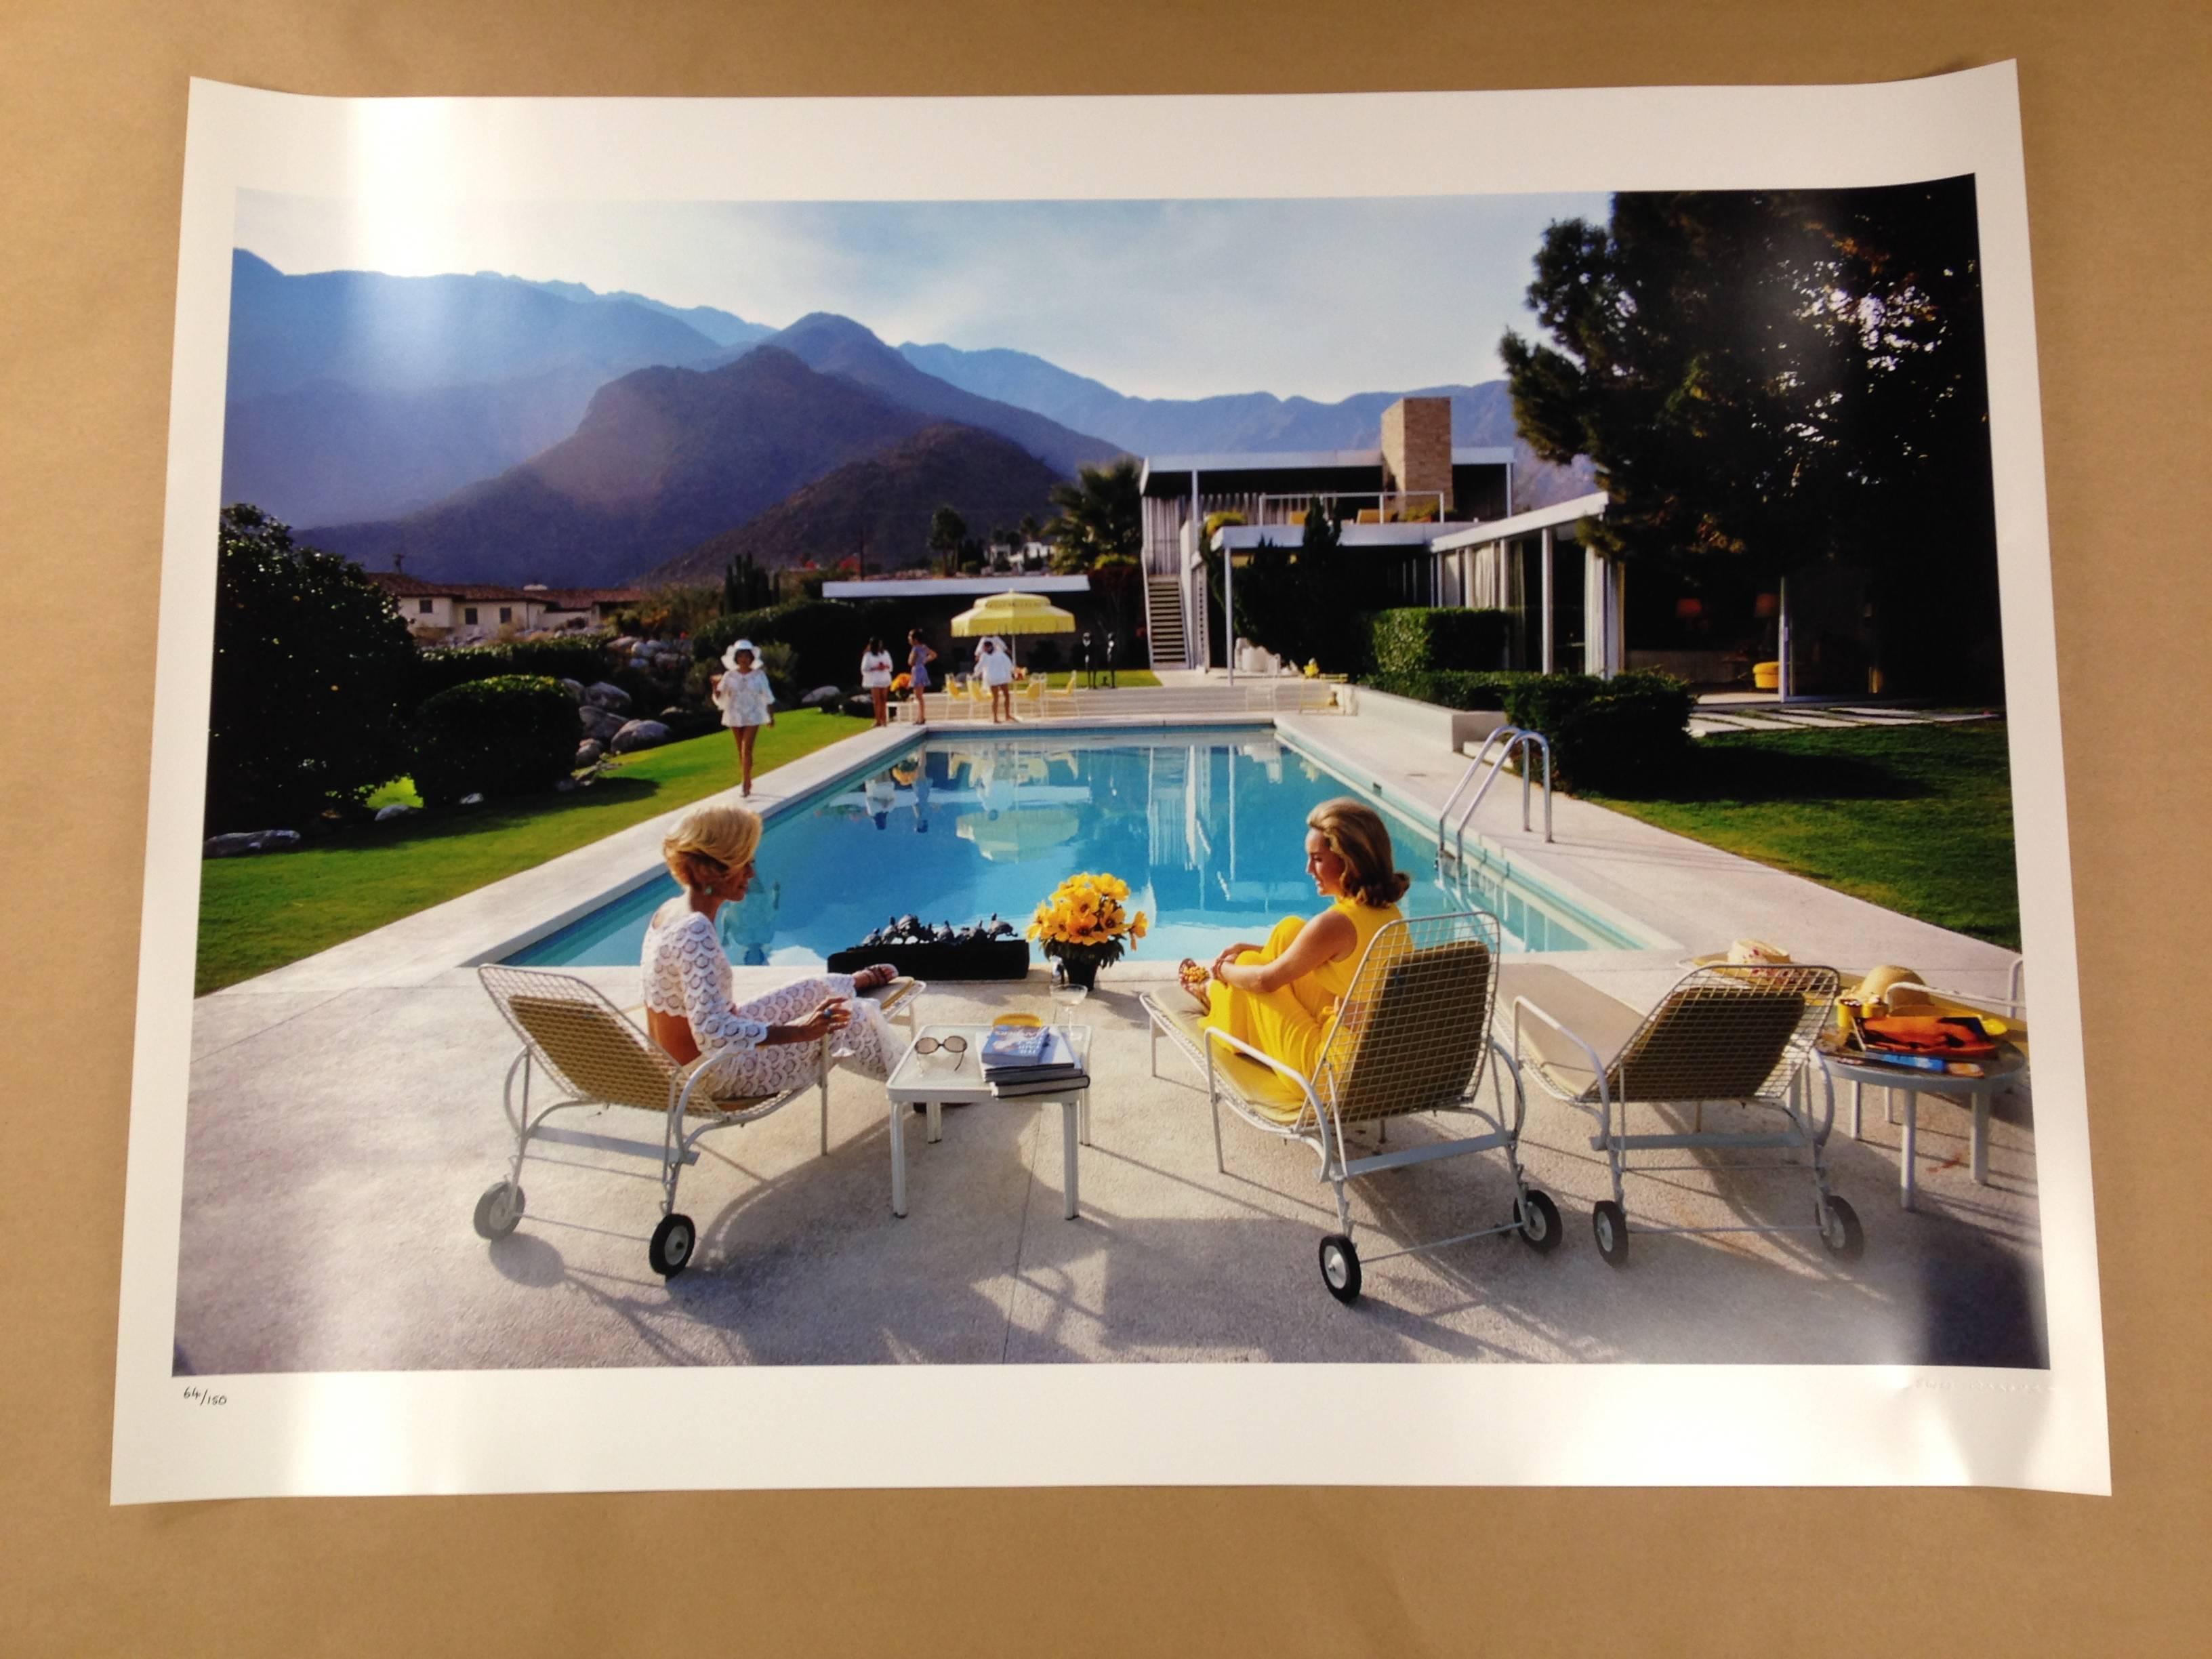 Hotel Beverly Hills, Fotografía de edición limitada, Verde menta clásico sobre azul - Photograph Realista de Slim Aarons